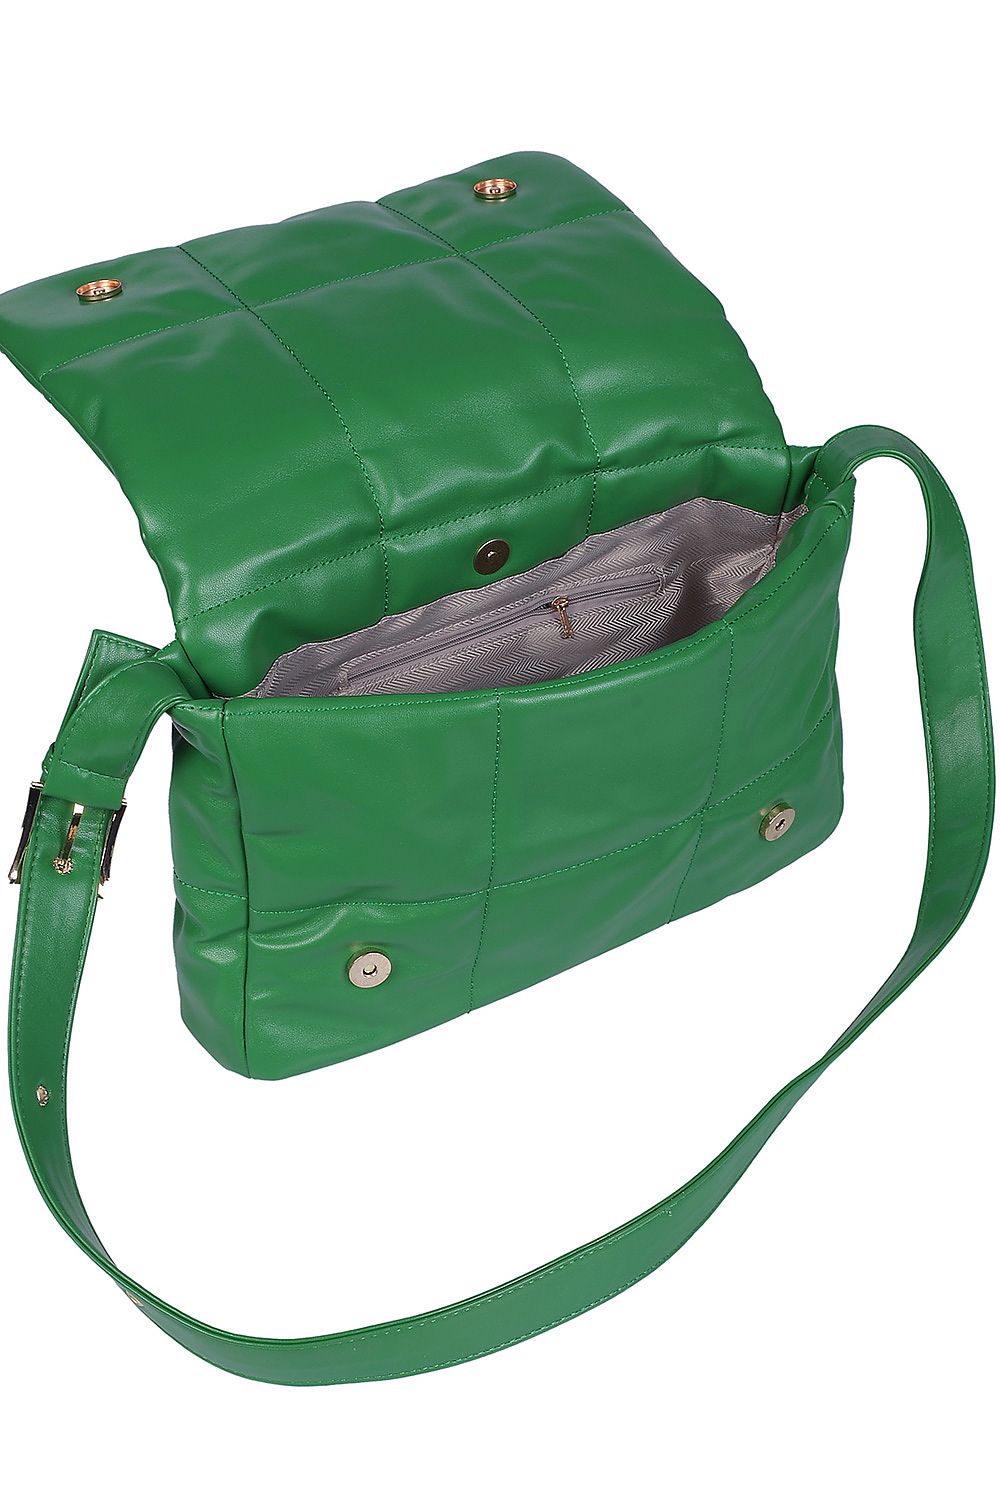 TEEK - Green Cush Everyday Handbag BAG TEEK MH   